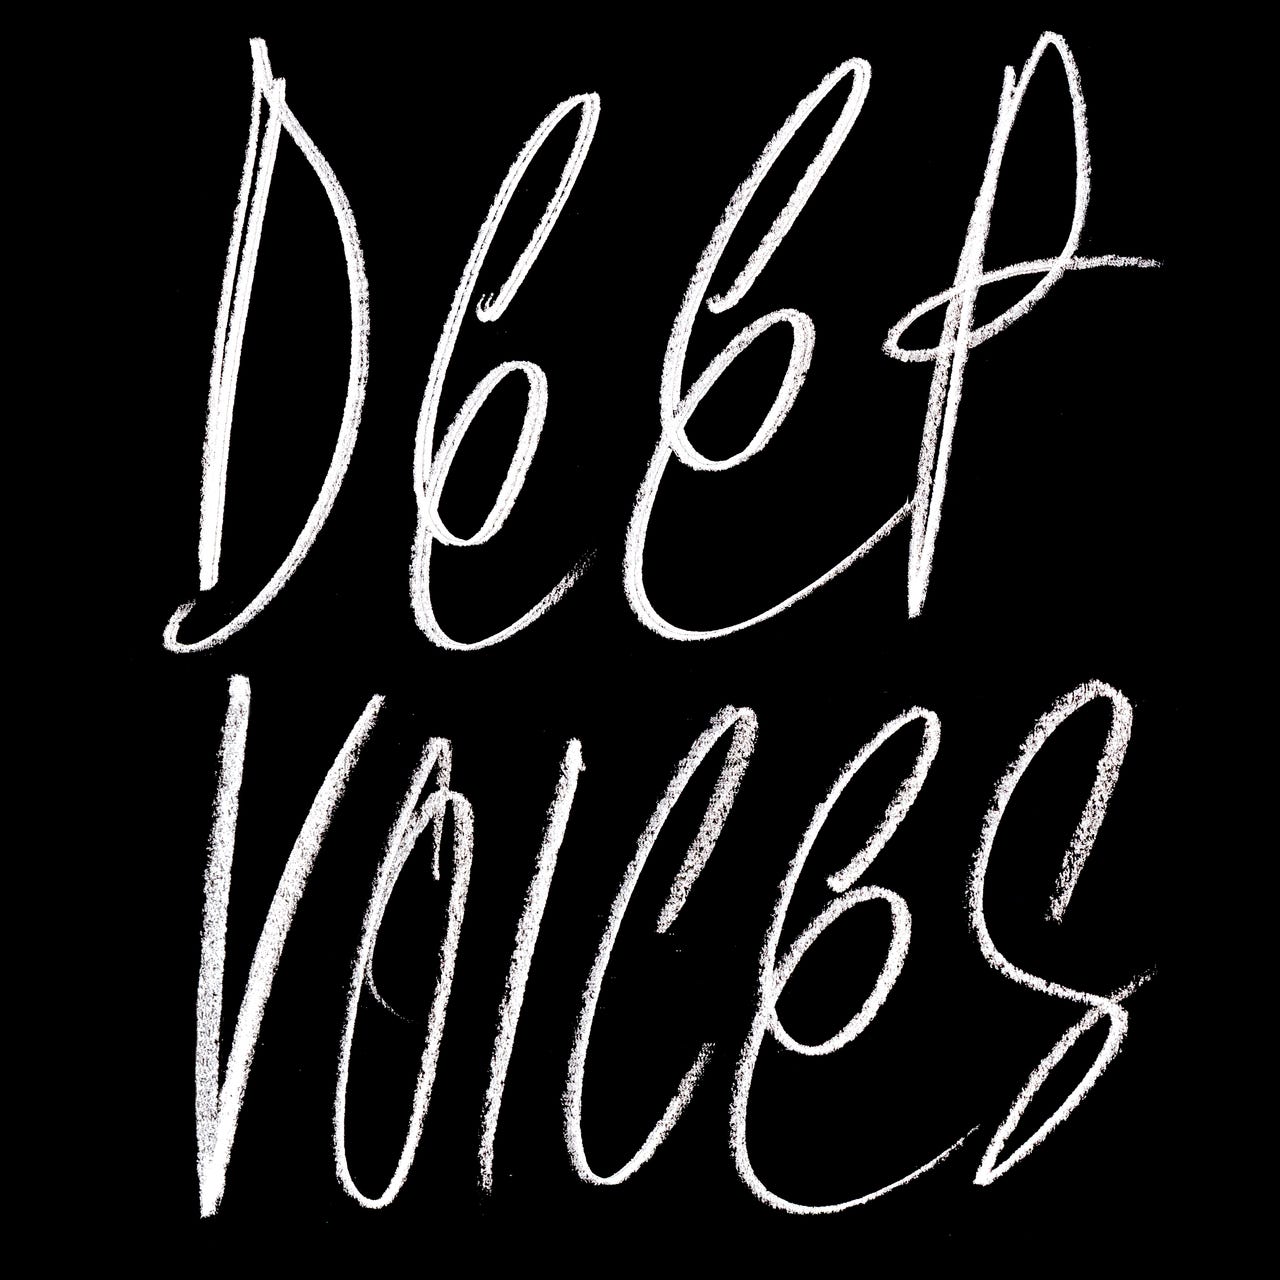 Deep Voices